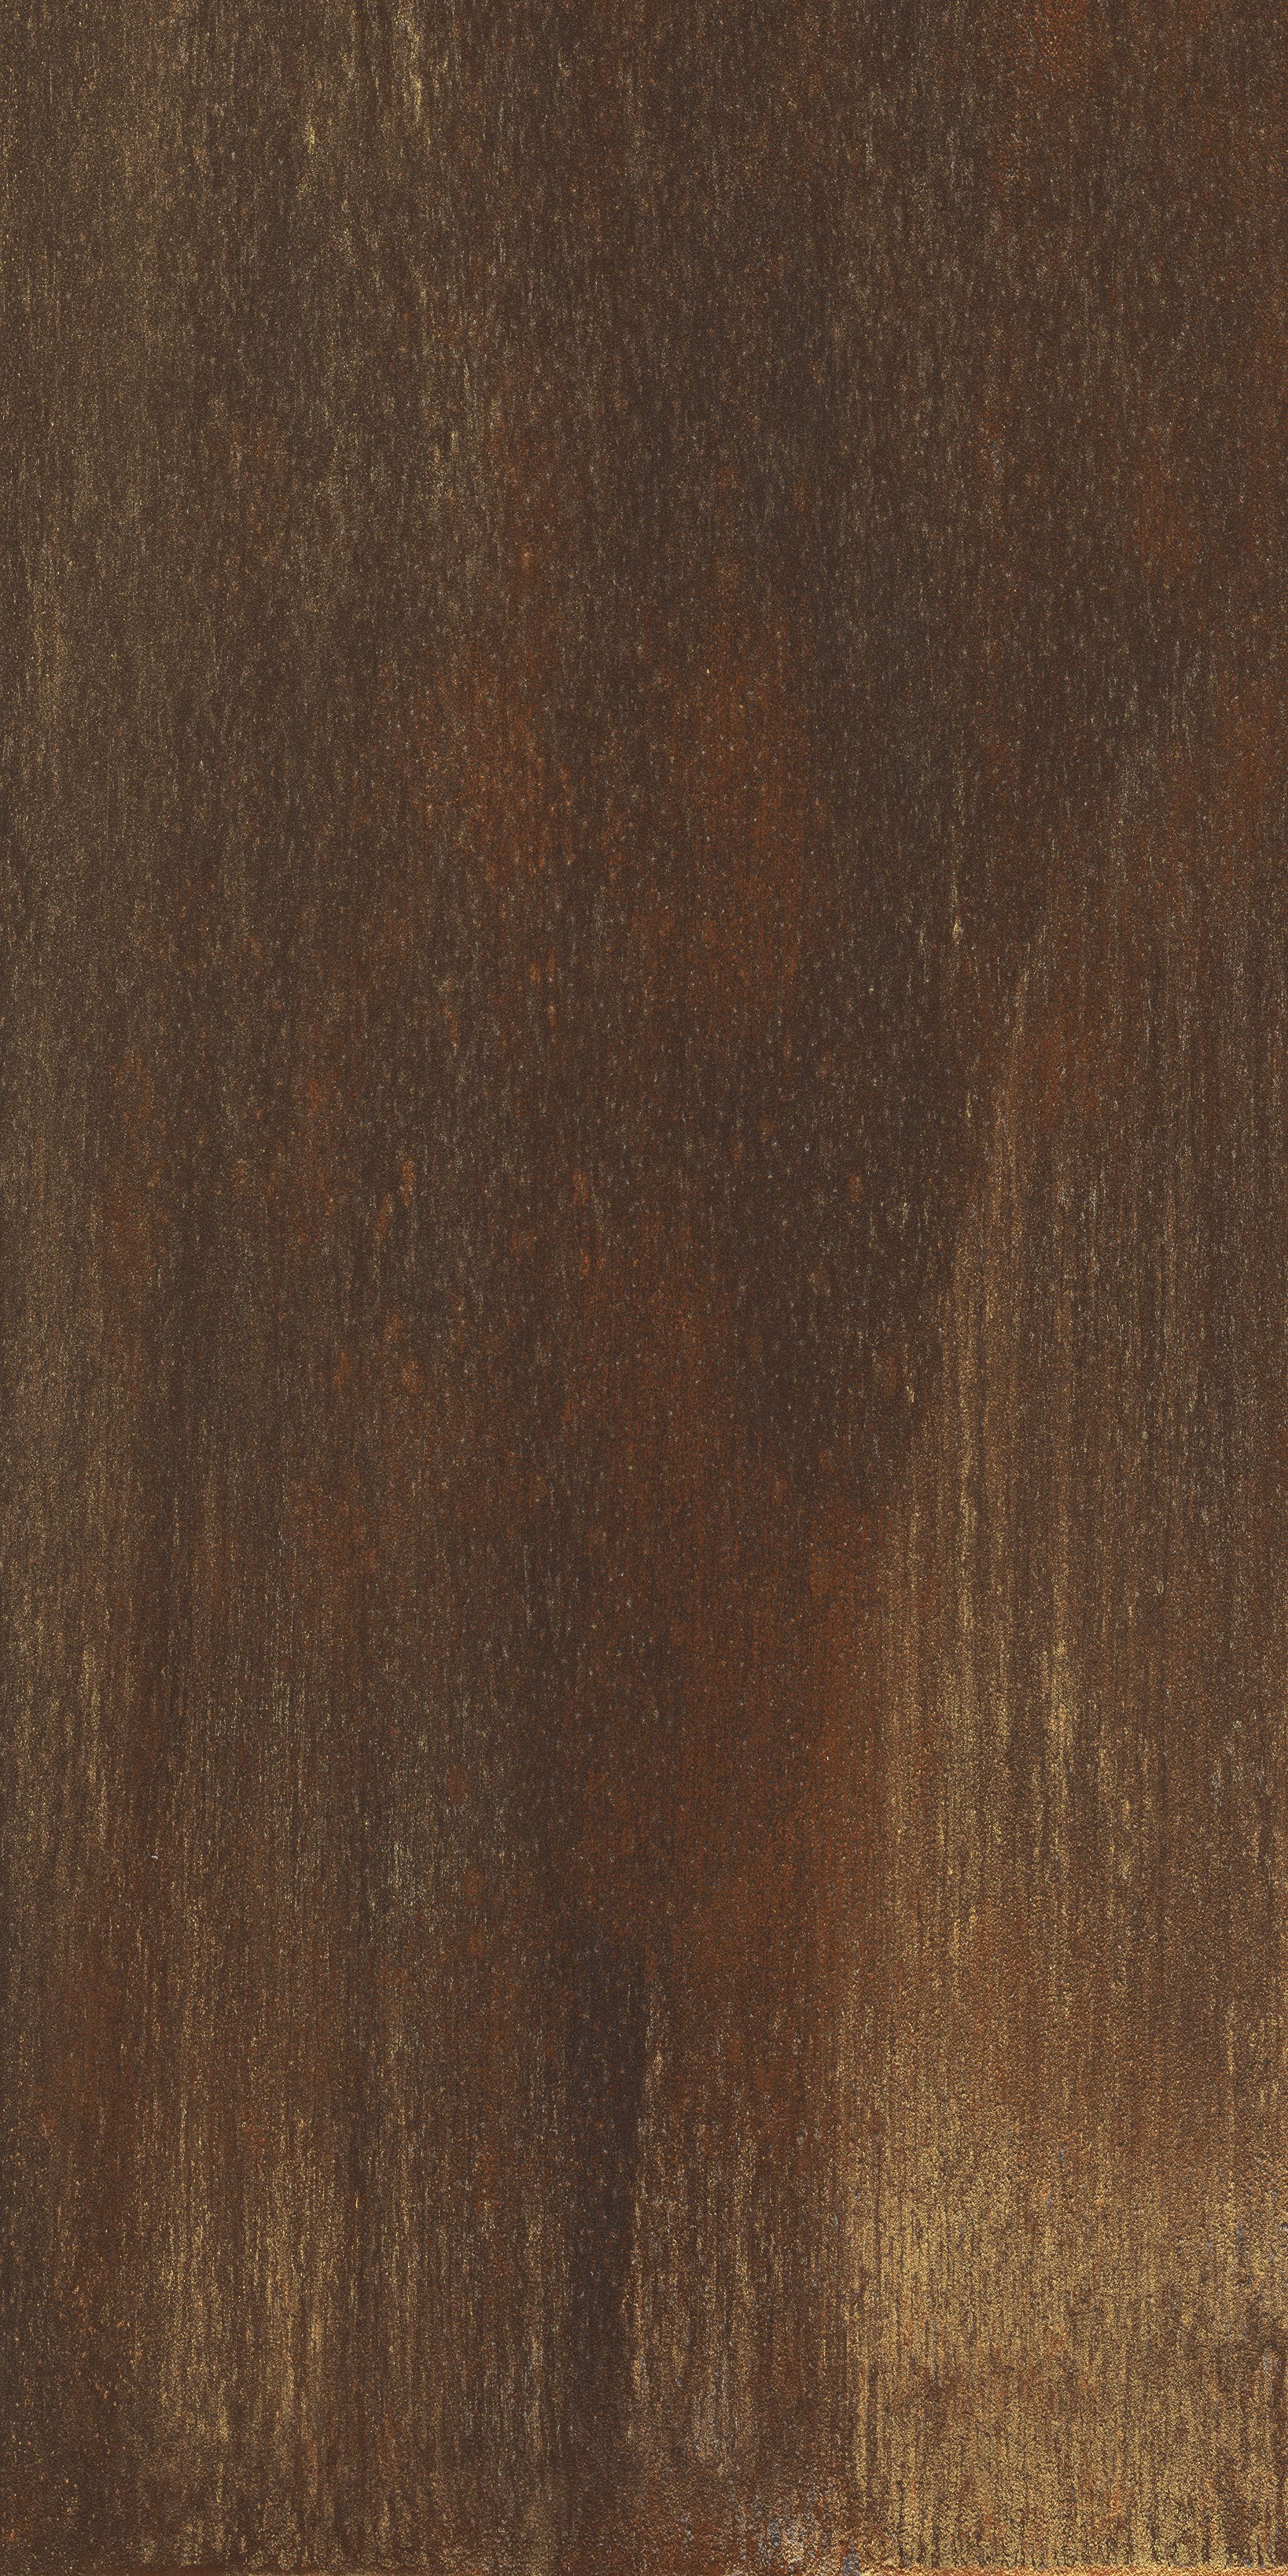 Плитка из керамогранита матовая Italon Серфейс 60x120 коричневый (610010000804) плитка из керамогранита матовая italon серфейс 60x120 коричневый 610010000804